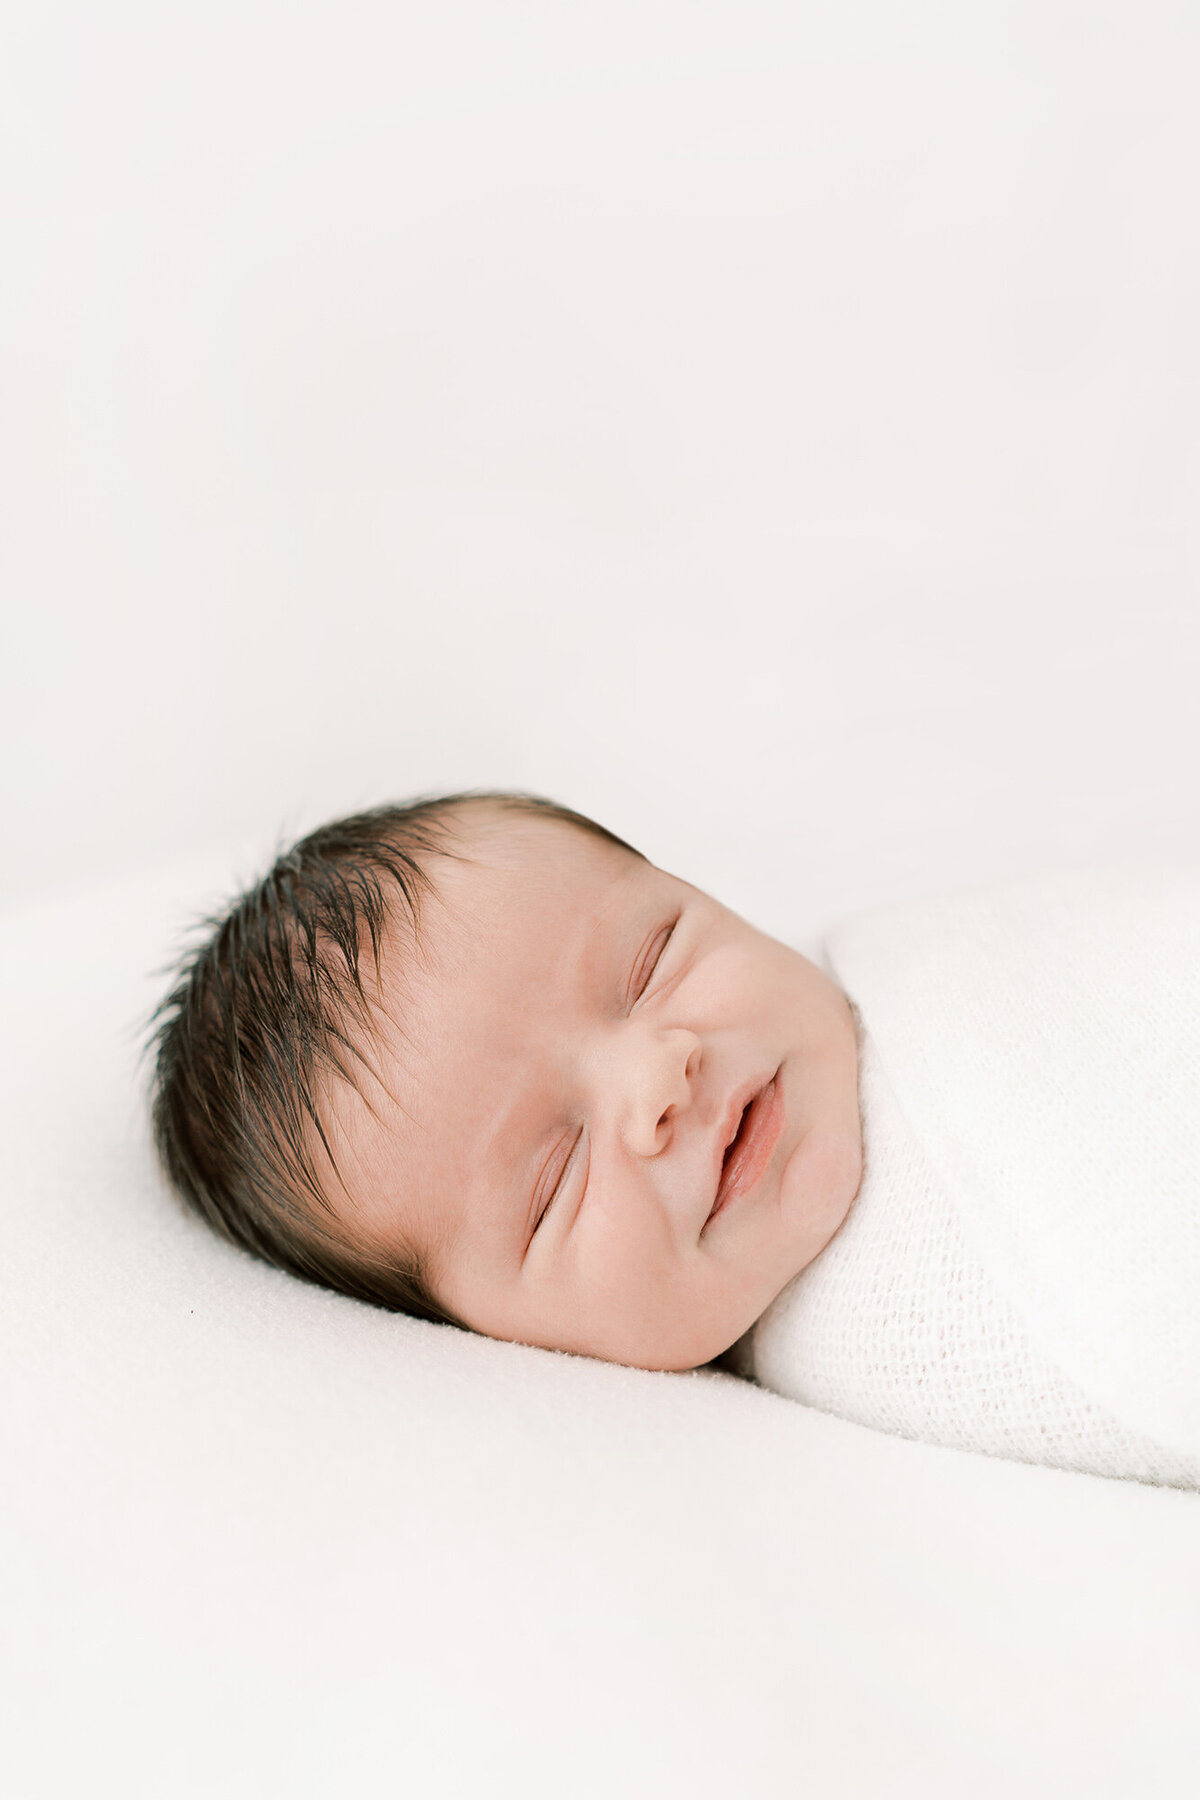 calgary_newborn_photographer